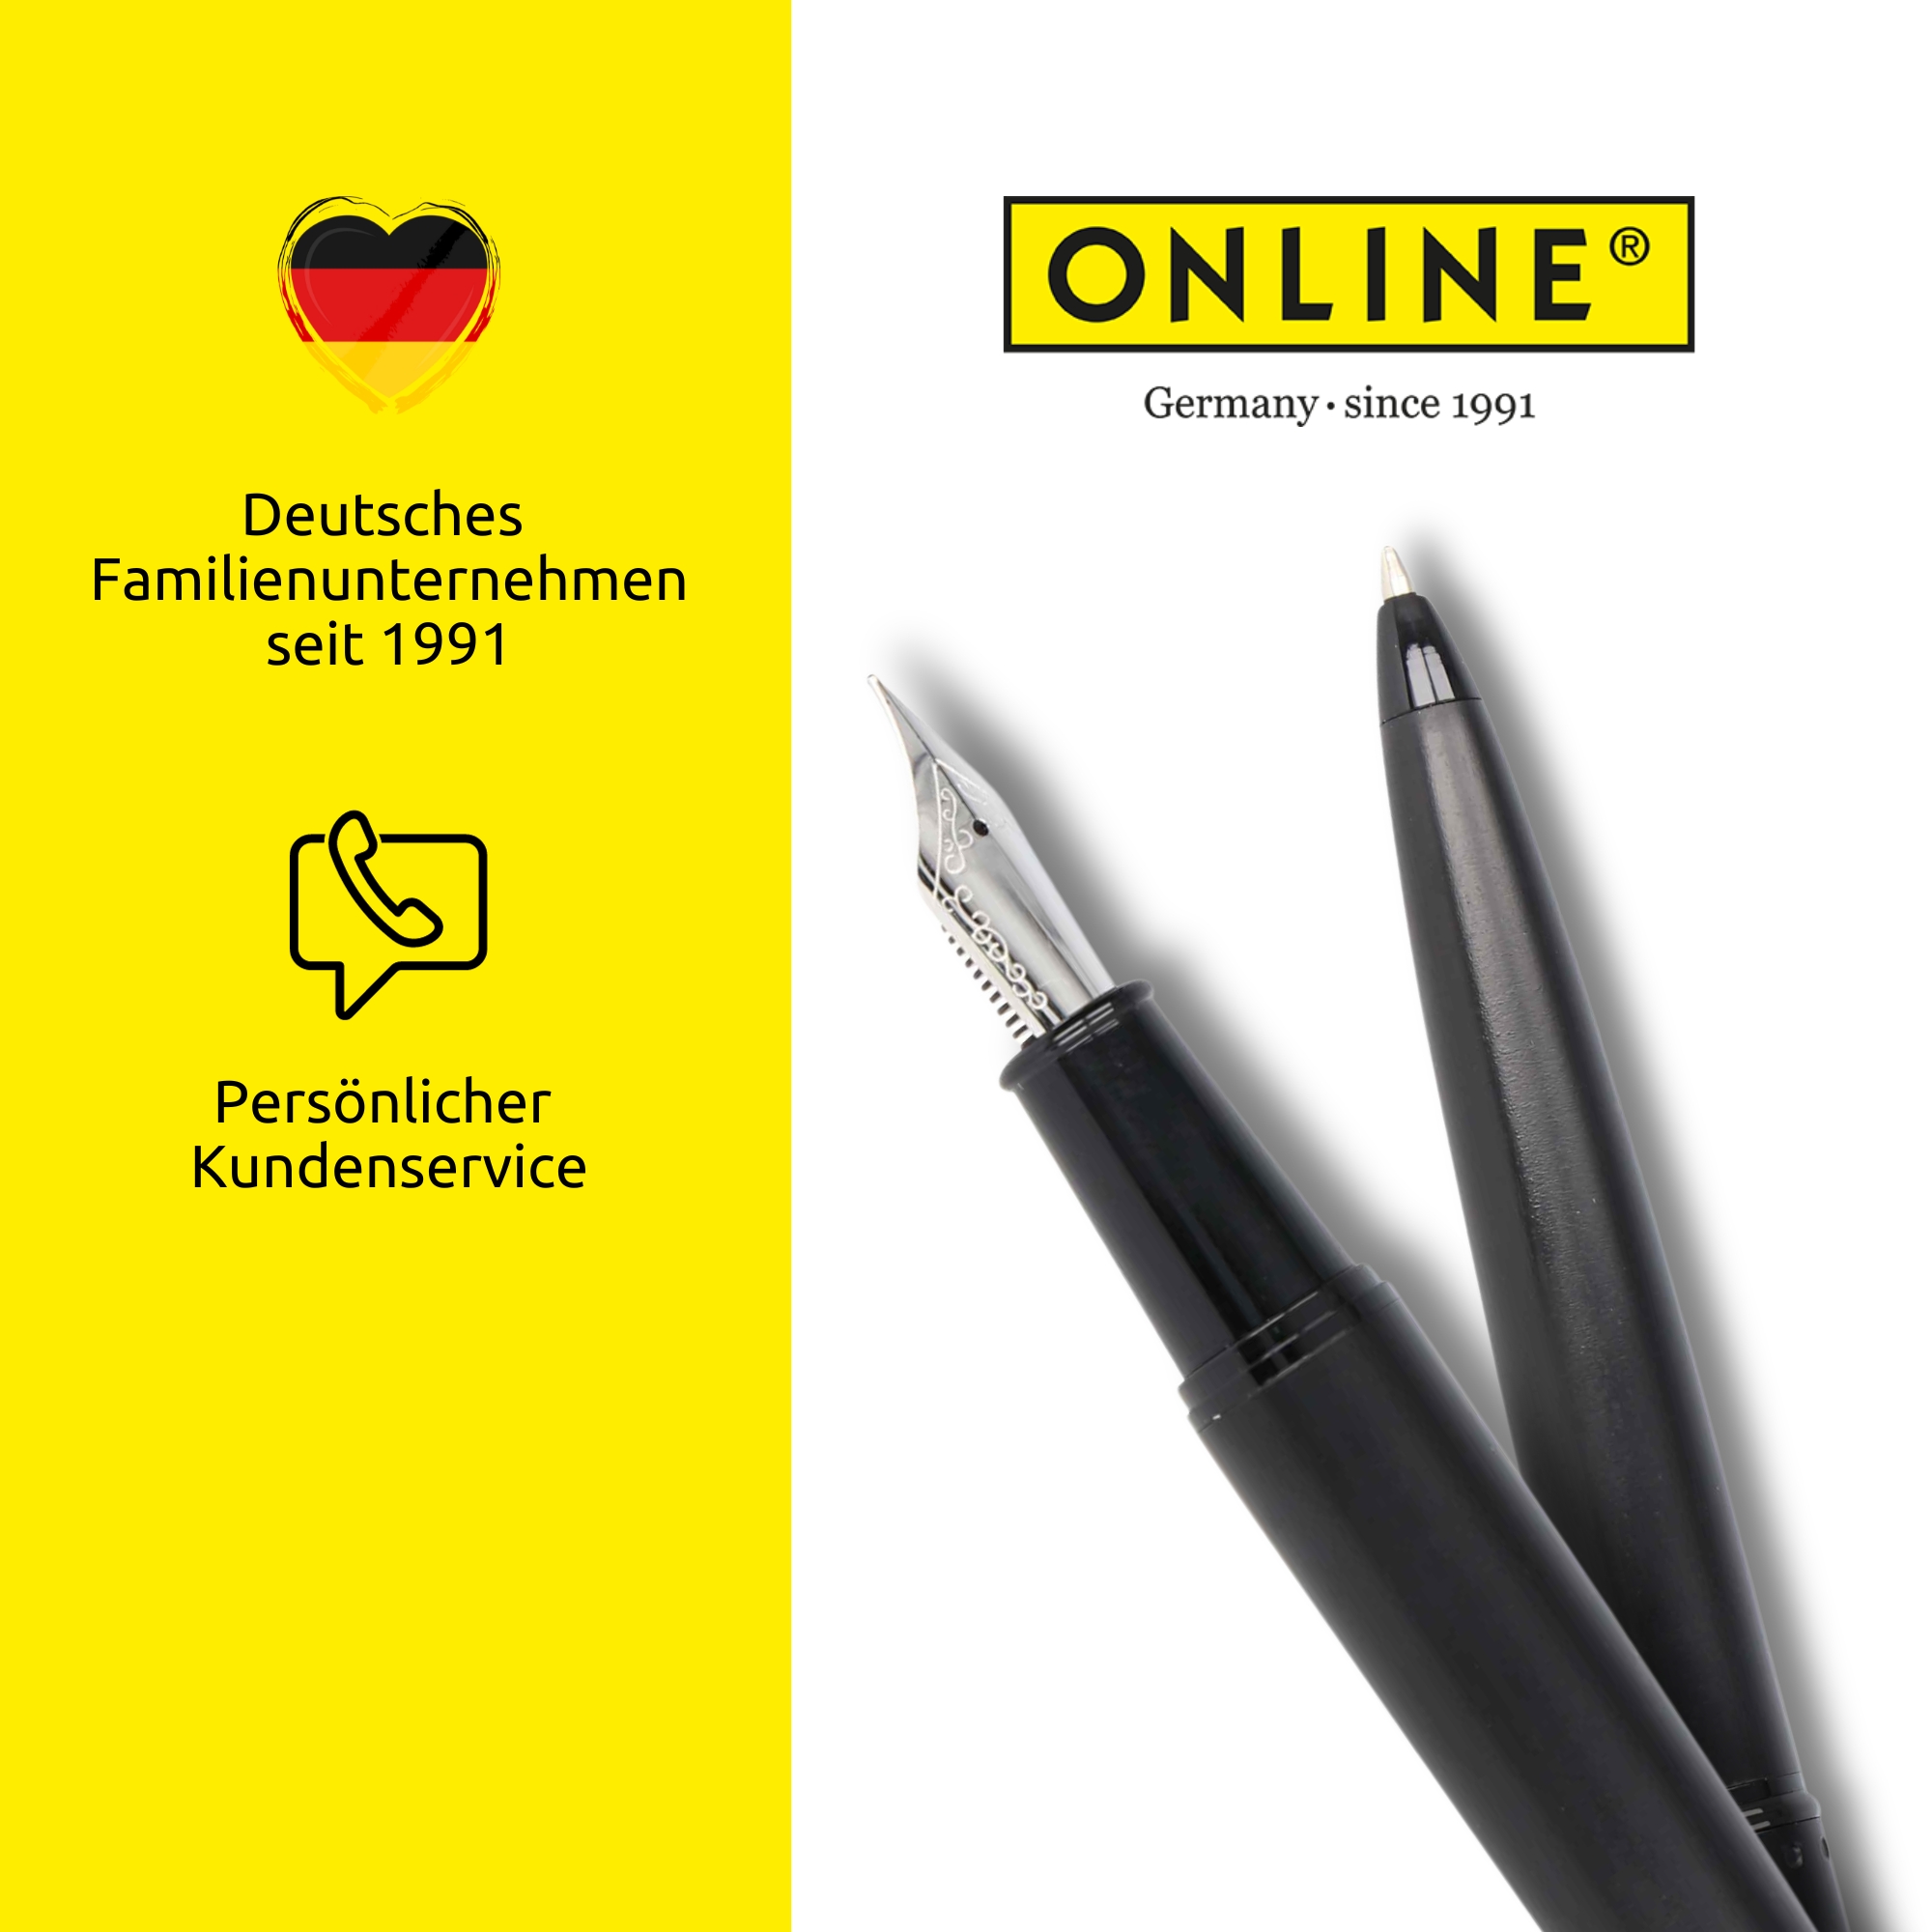 Deutsches Familienunternehmen seit 1991 mit persönlichem Kundenservice